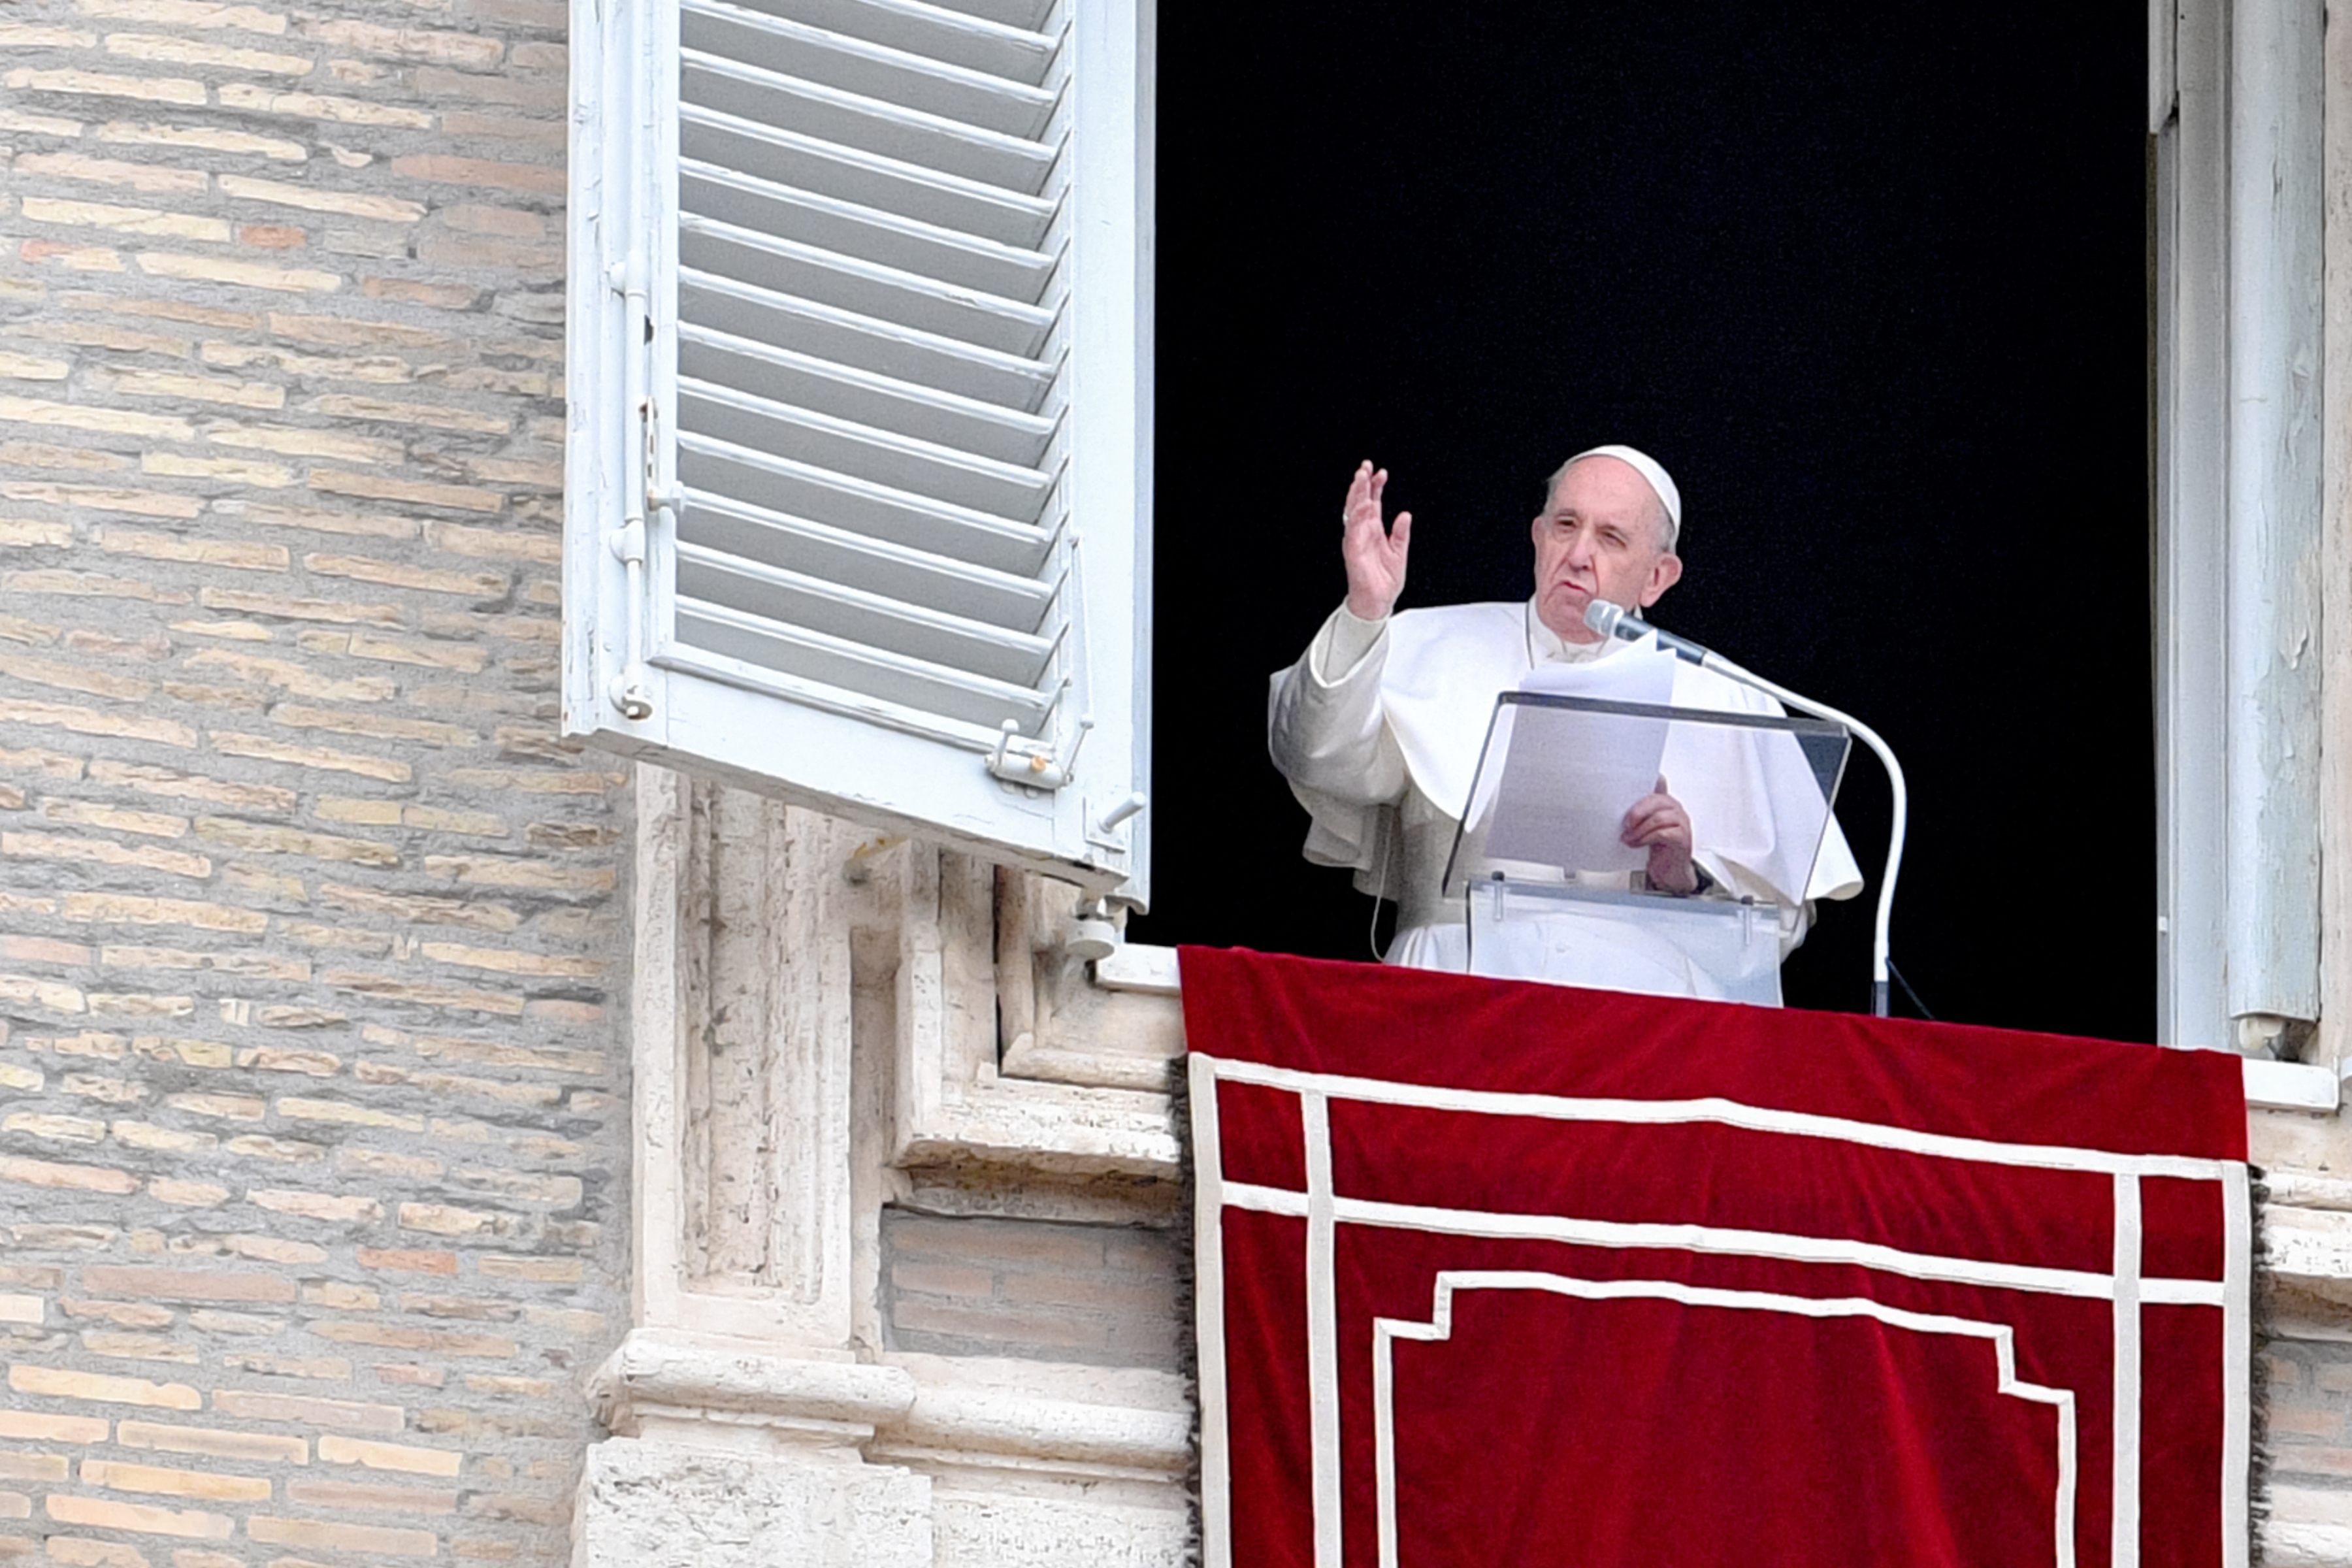 El Vaticano aclaró que para la doctrina de la iglesia católica, los sacerdotes no pueden bendecir uniones entre personas del mismo sexo. (Foto Prensa Libre: AFP)